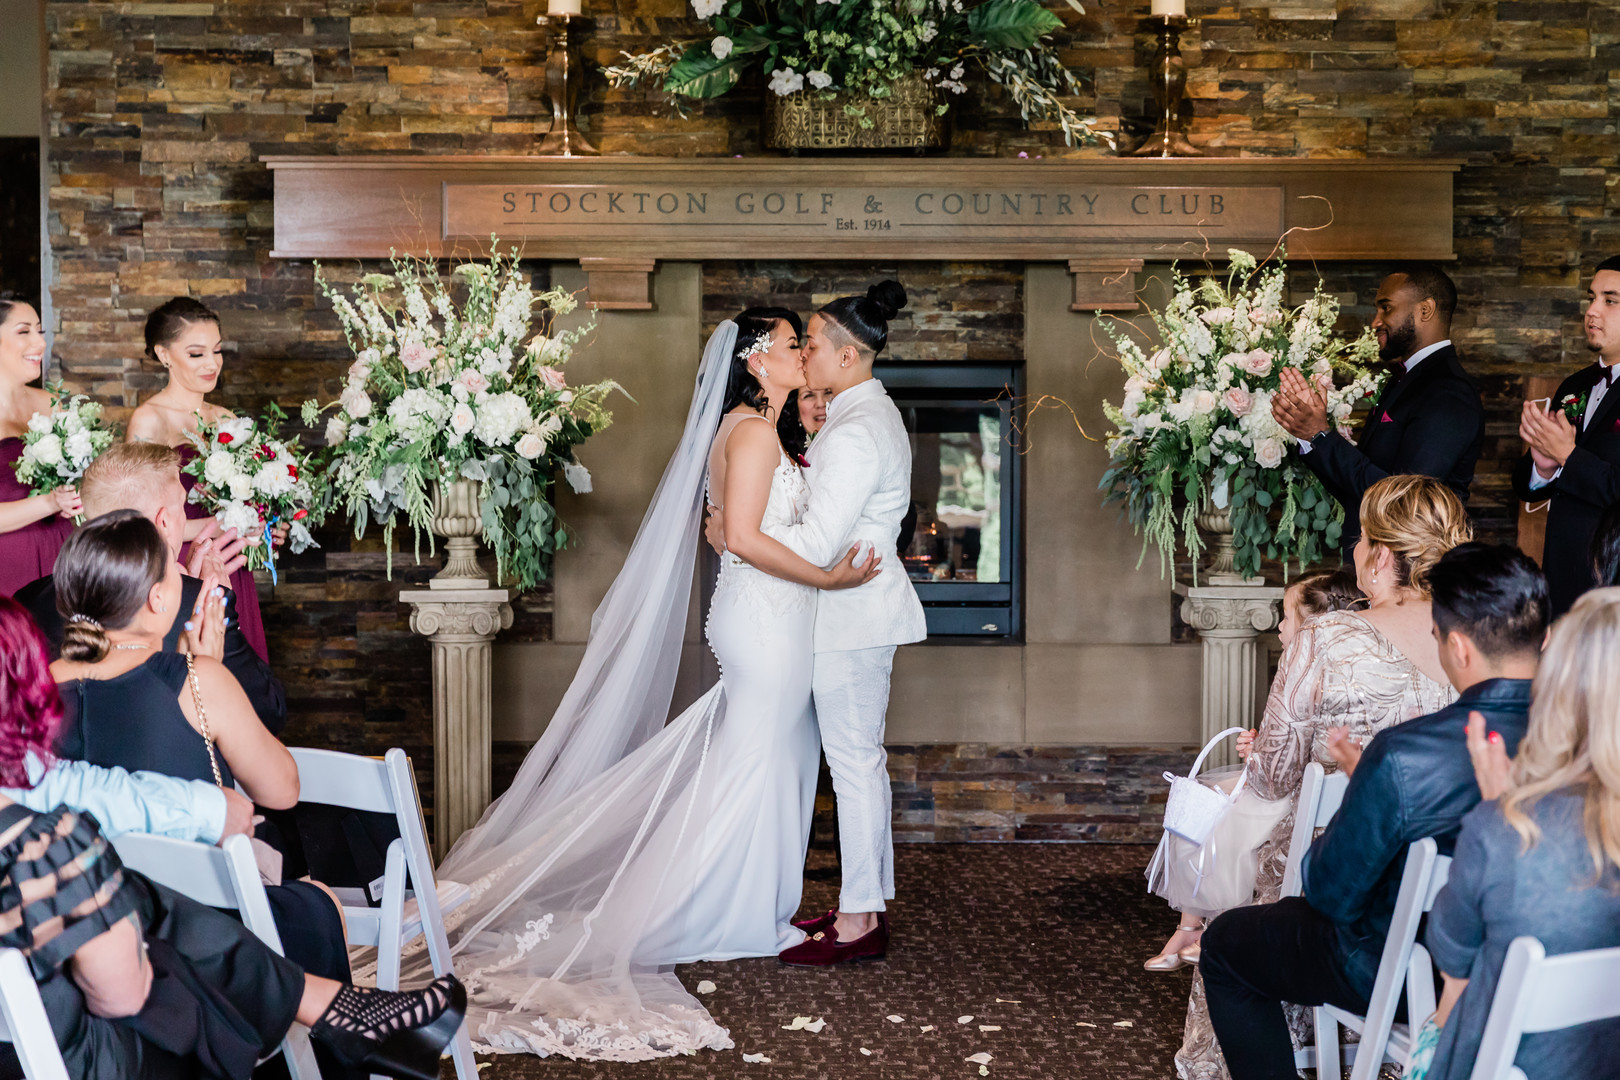 Spring country club wedding in Stockton, California two brides white tux white dress kiss vows